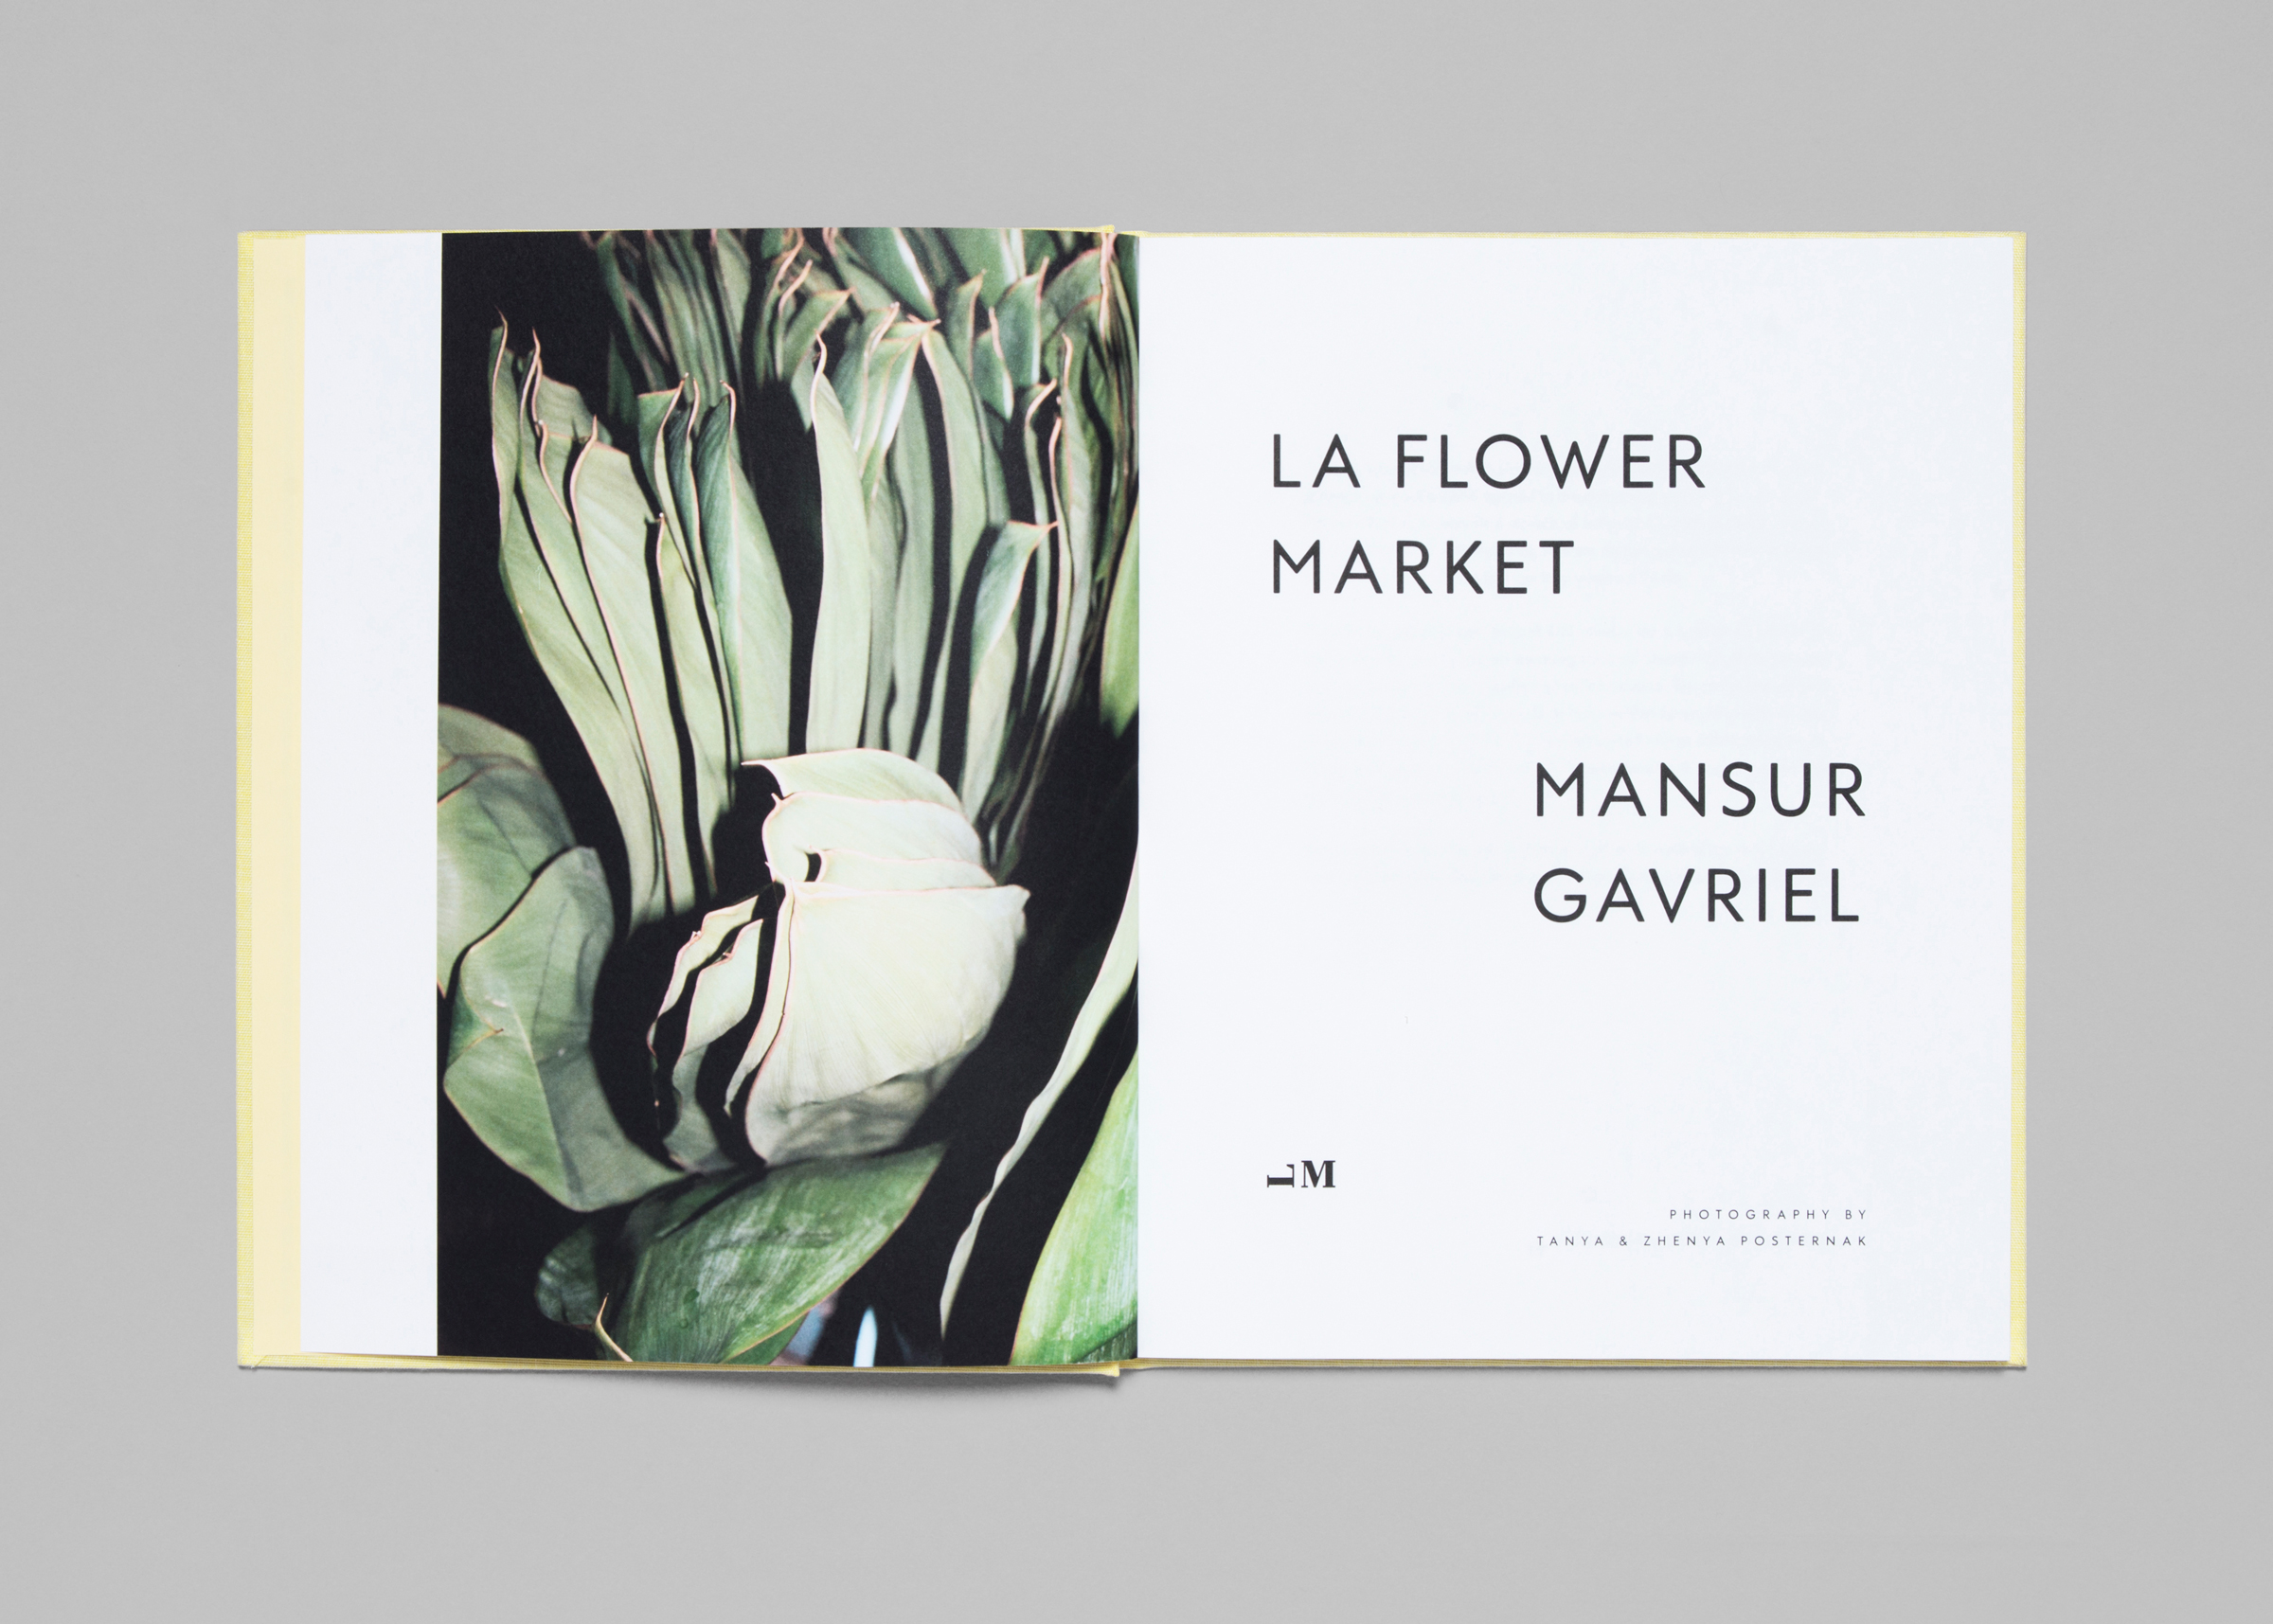 Mansur Gavriel — LA Flower Market